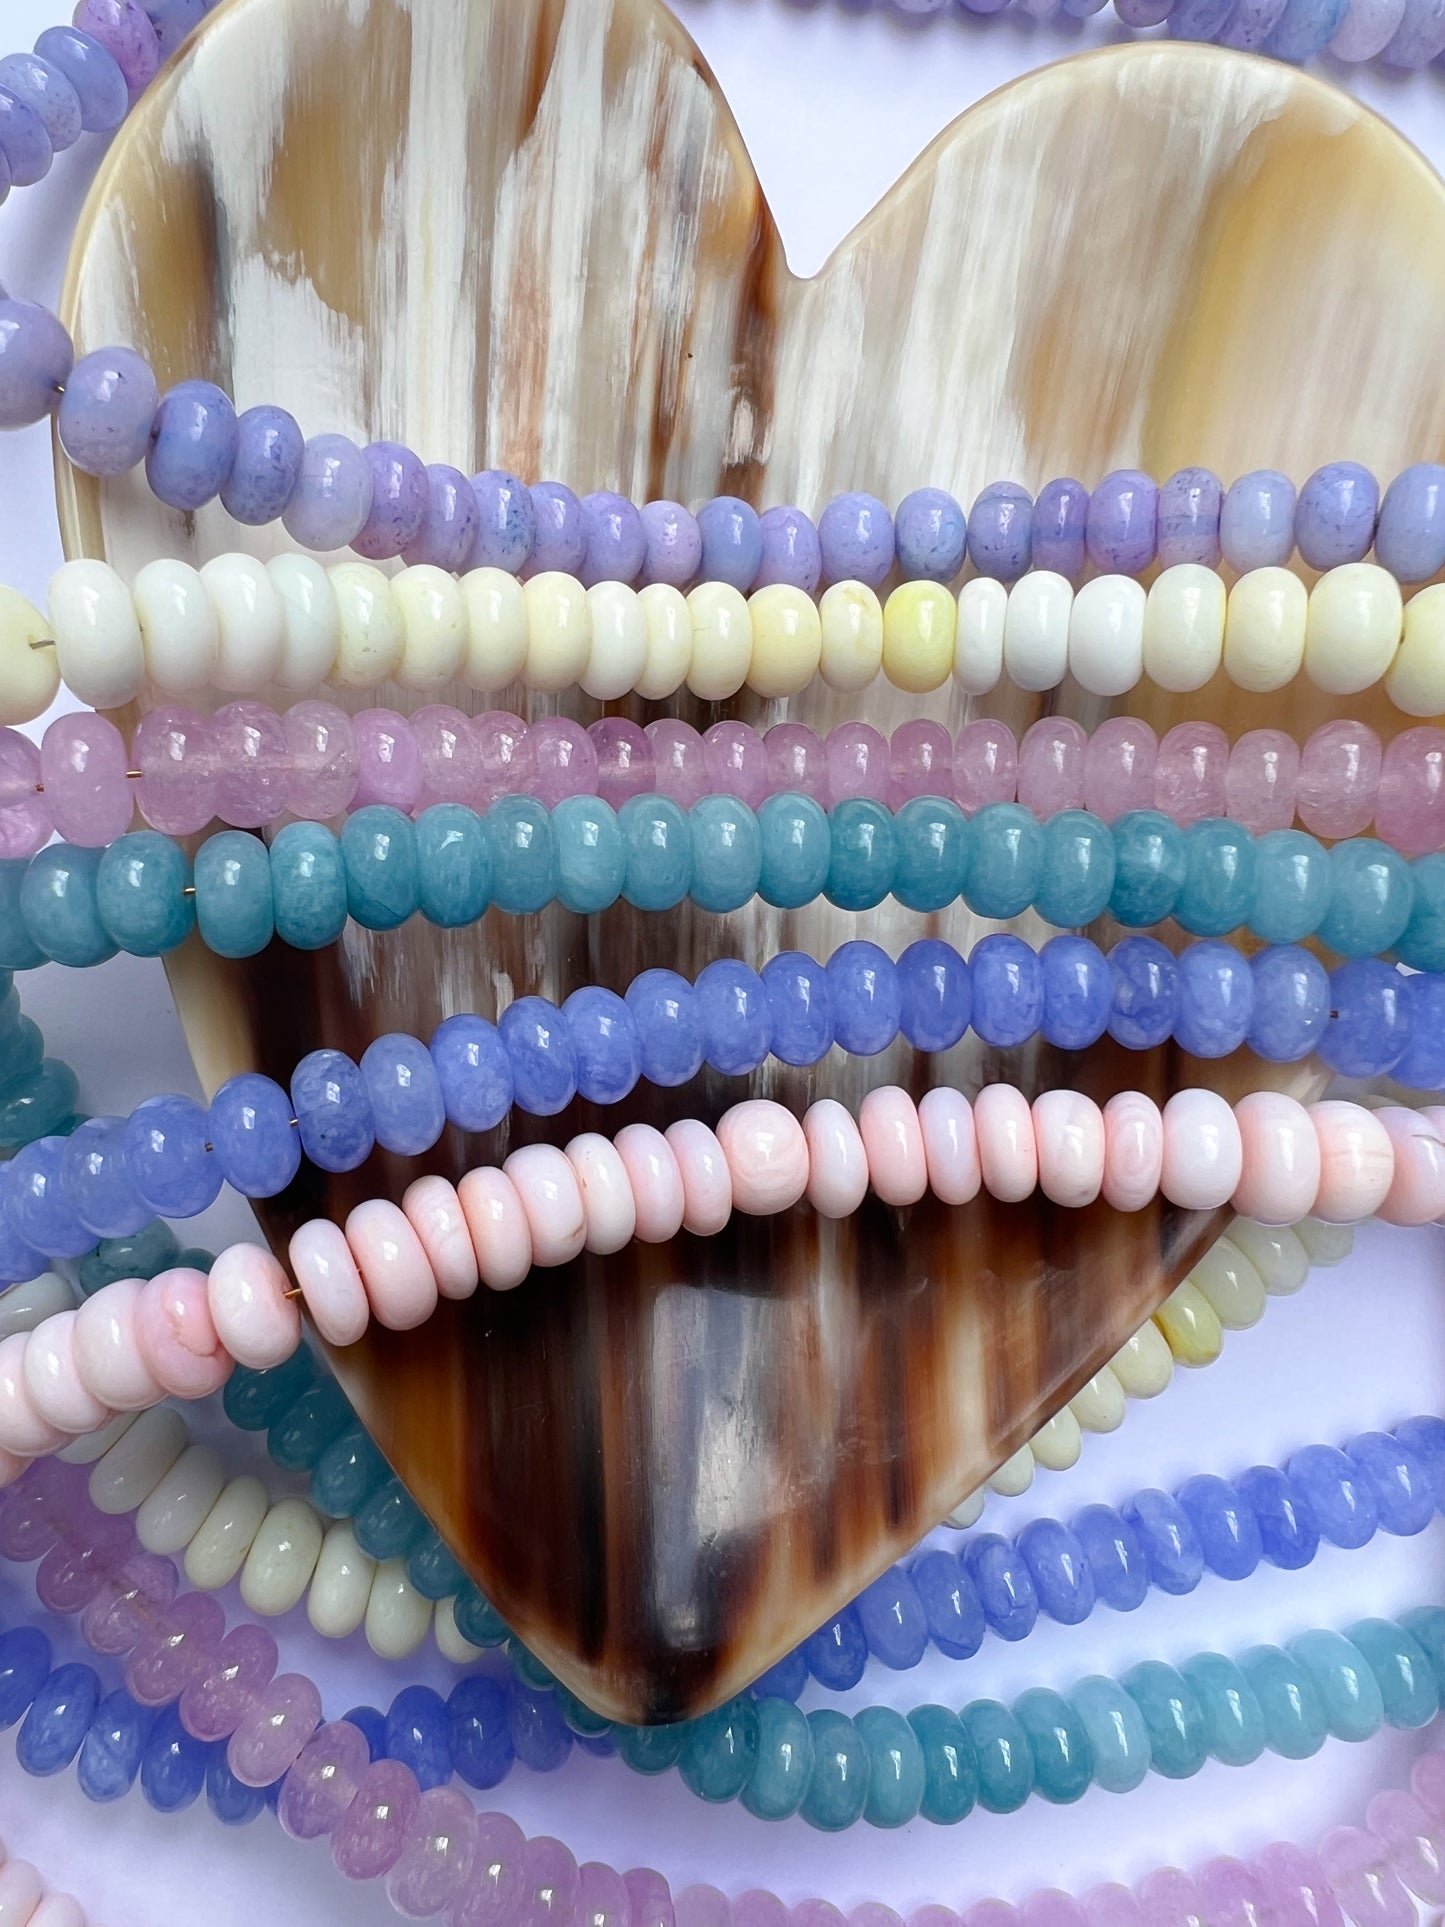 Lavender Quartz Necklace